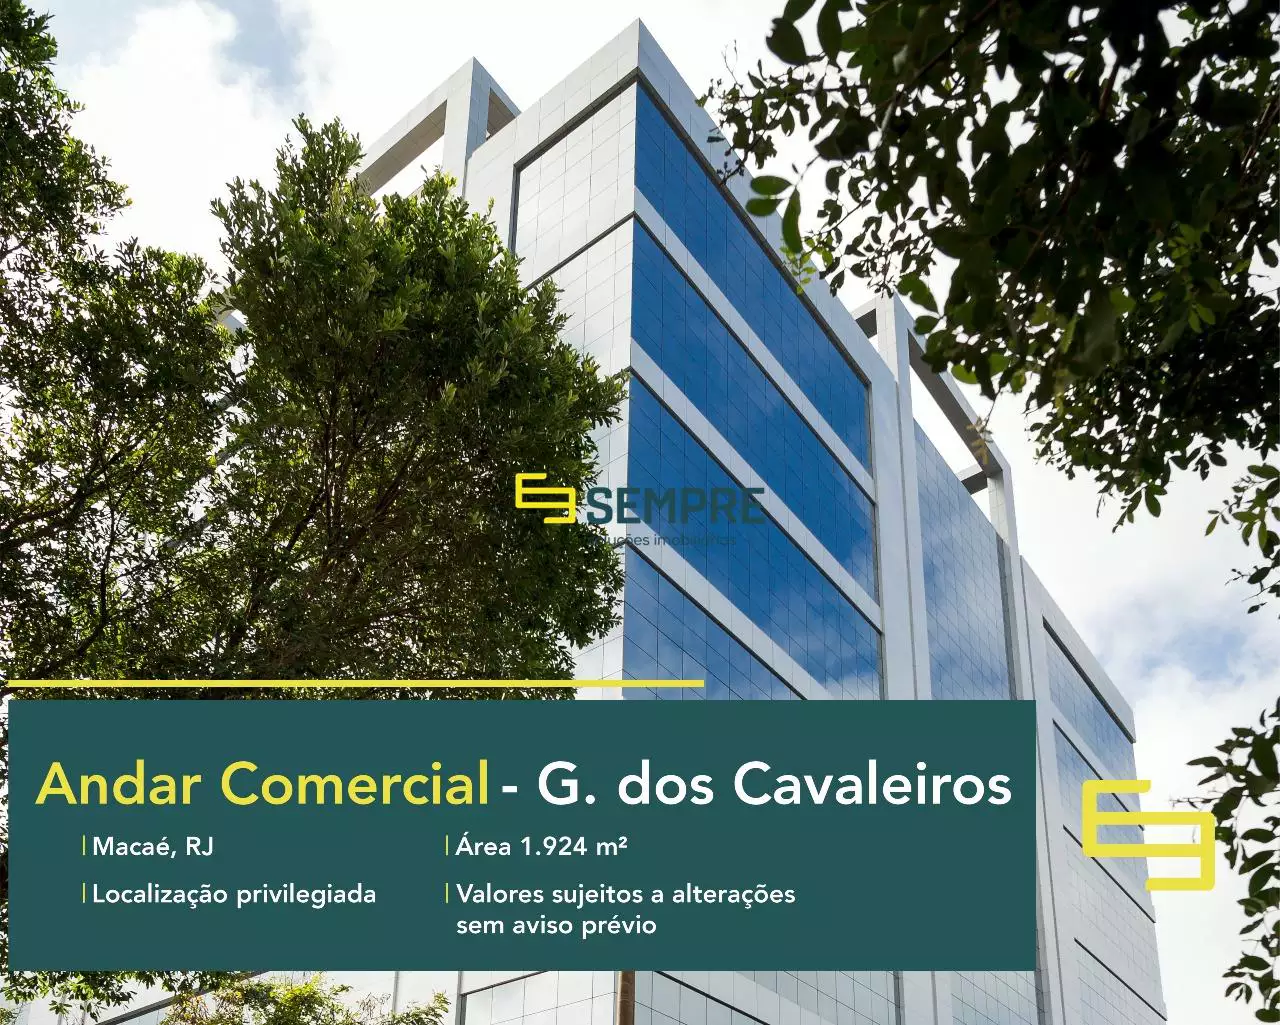 Prédio comercial no Rio de Janeiro para alugar - The Corporate, excelente localização. O ponto comercial conta com área de 1.924 m².